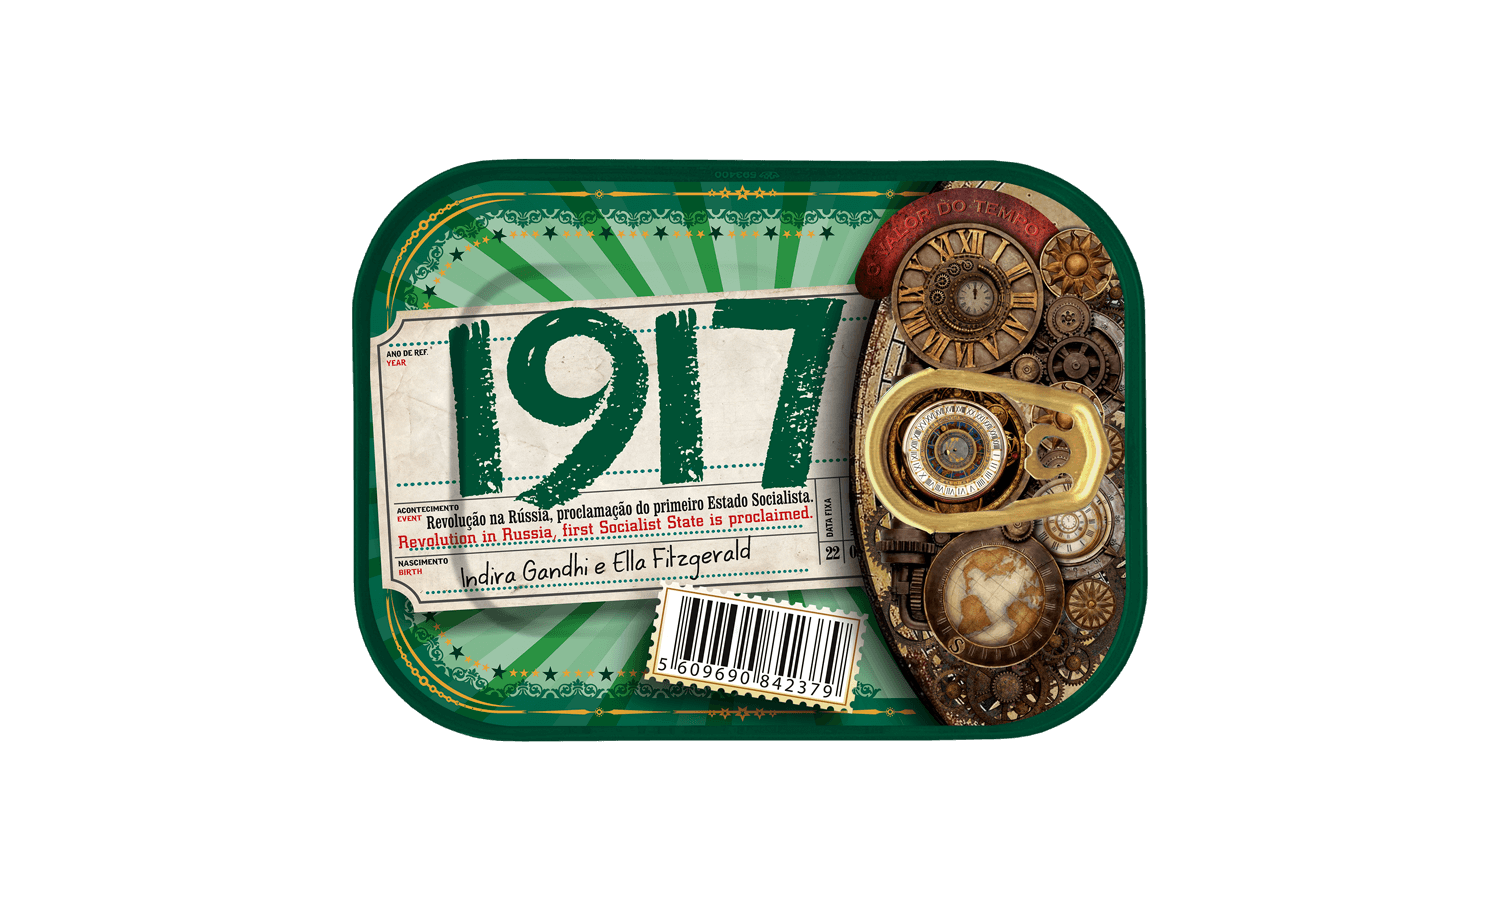 Timeless Sardines | 1917